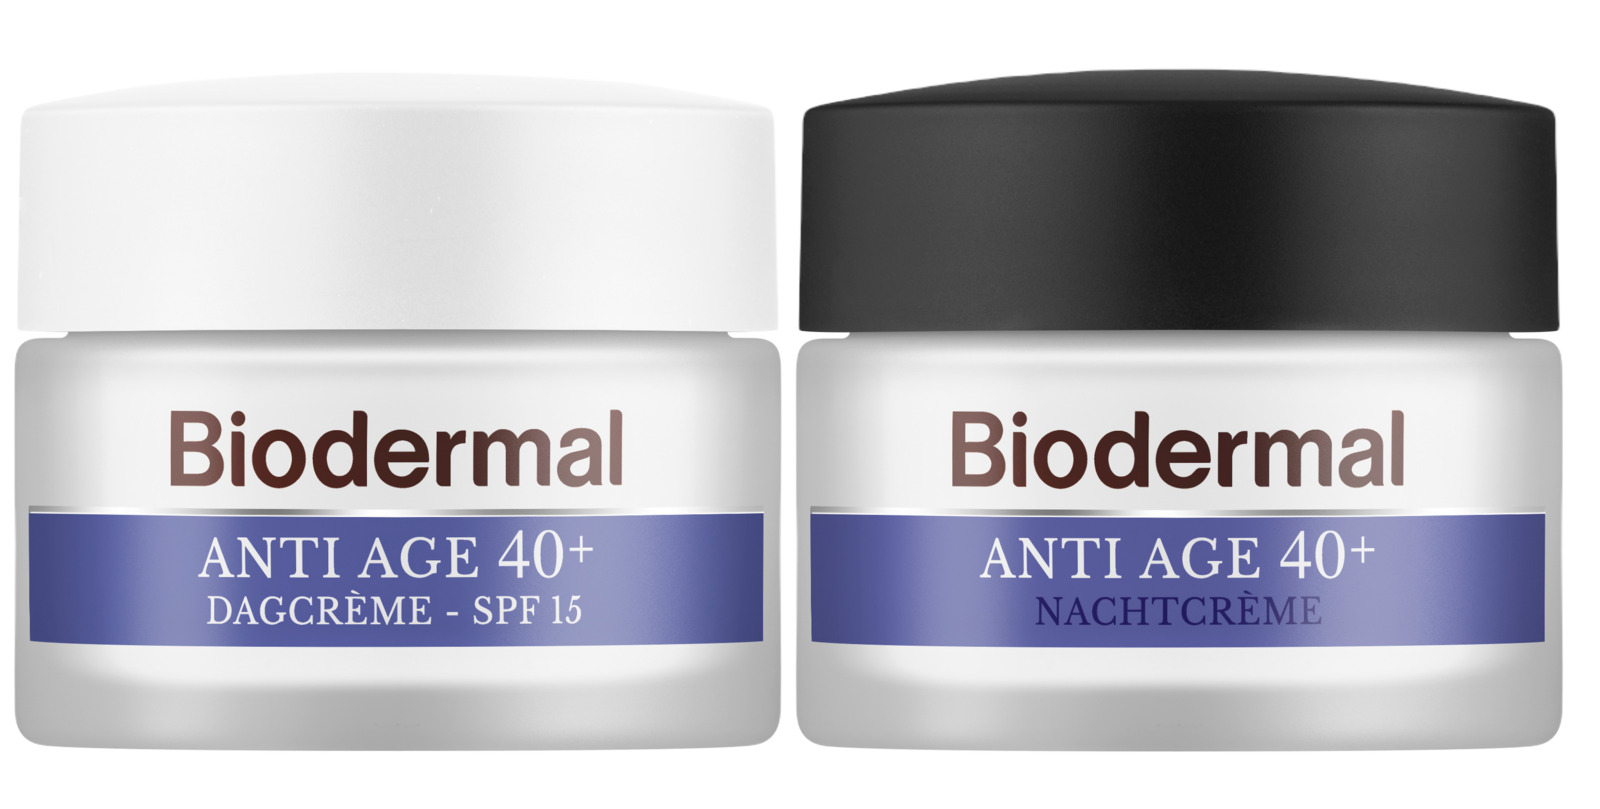 Combiset Biodermal Anti Age 40+ Gezichtsverzorgingsroutine - Dag- en Nachtcrème - 2 stuks